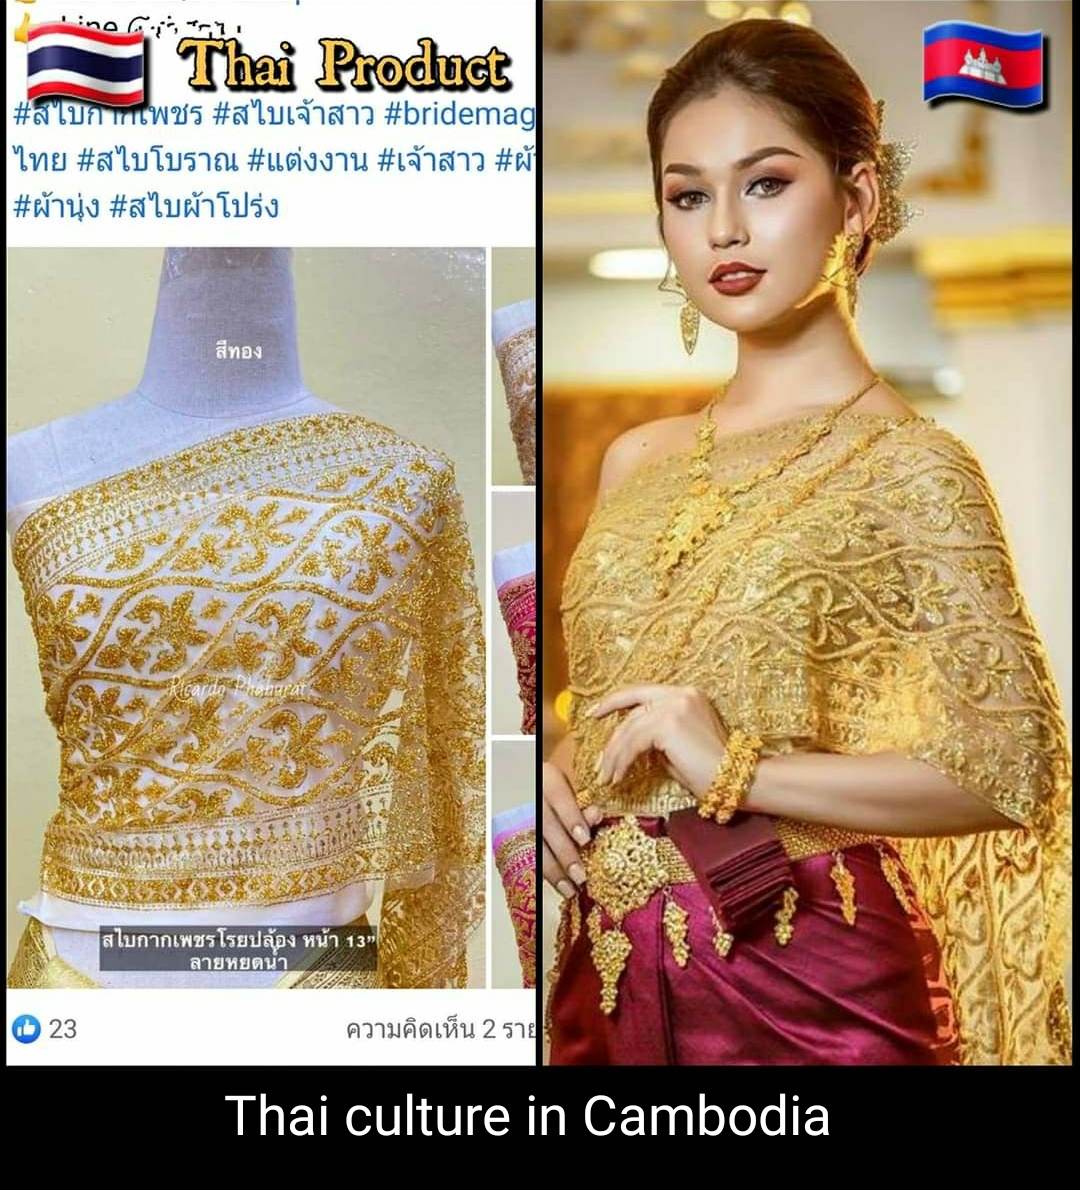 Sbai Thai culture in Cambodia